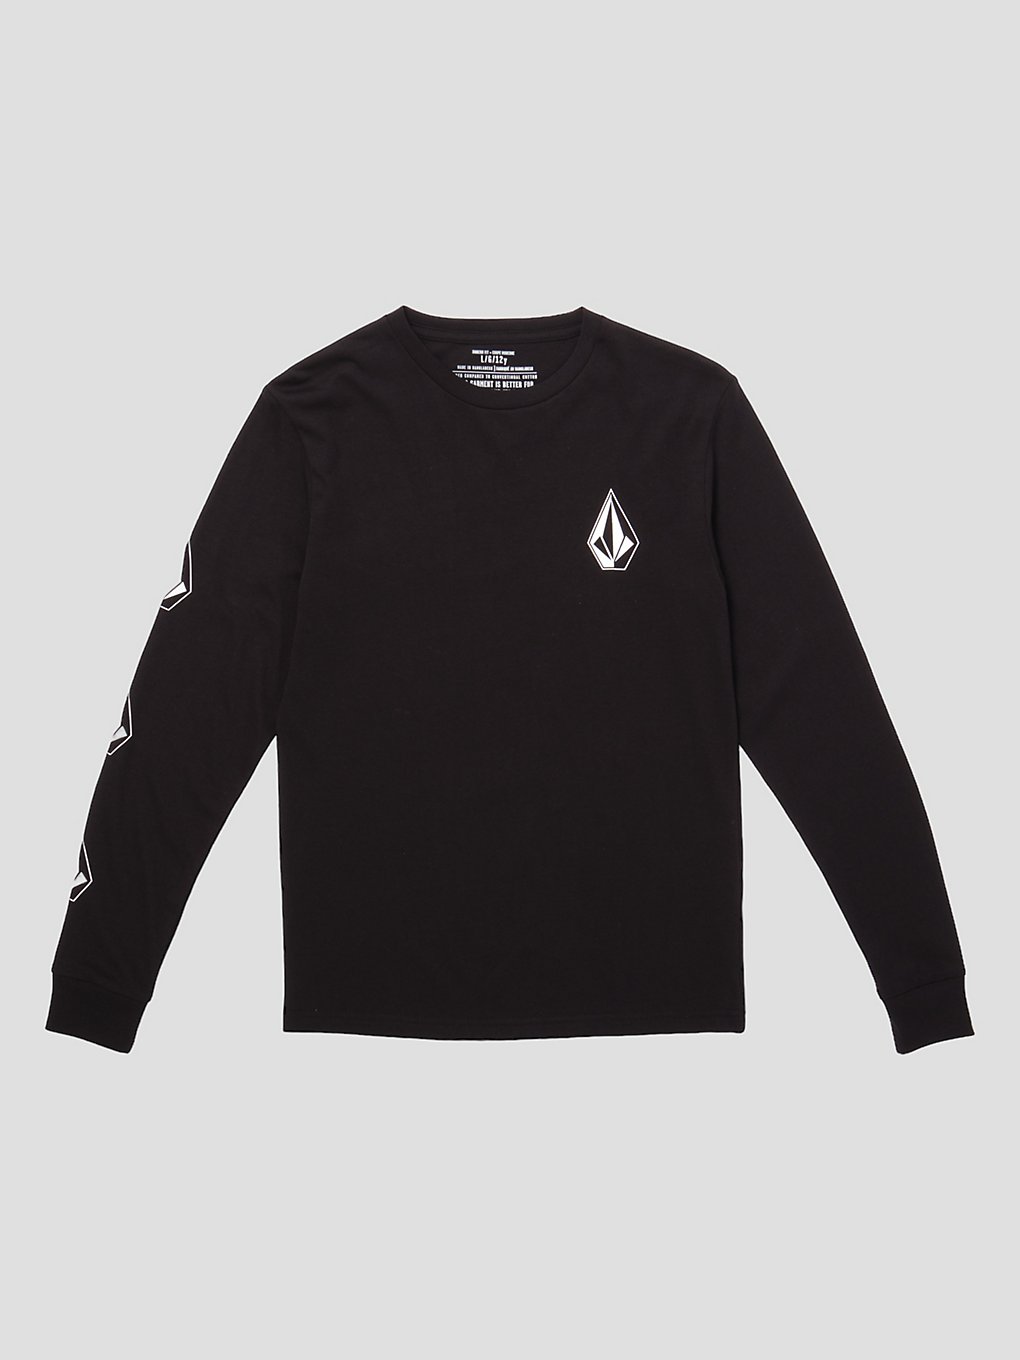 Volcom Iconic Stone Longsleeve T-Shirt black kaufen